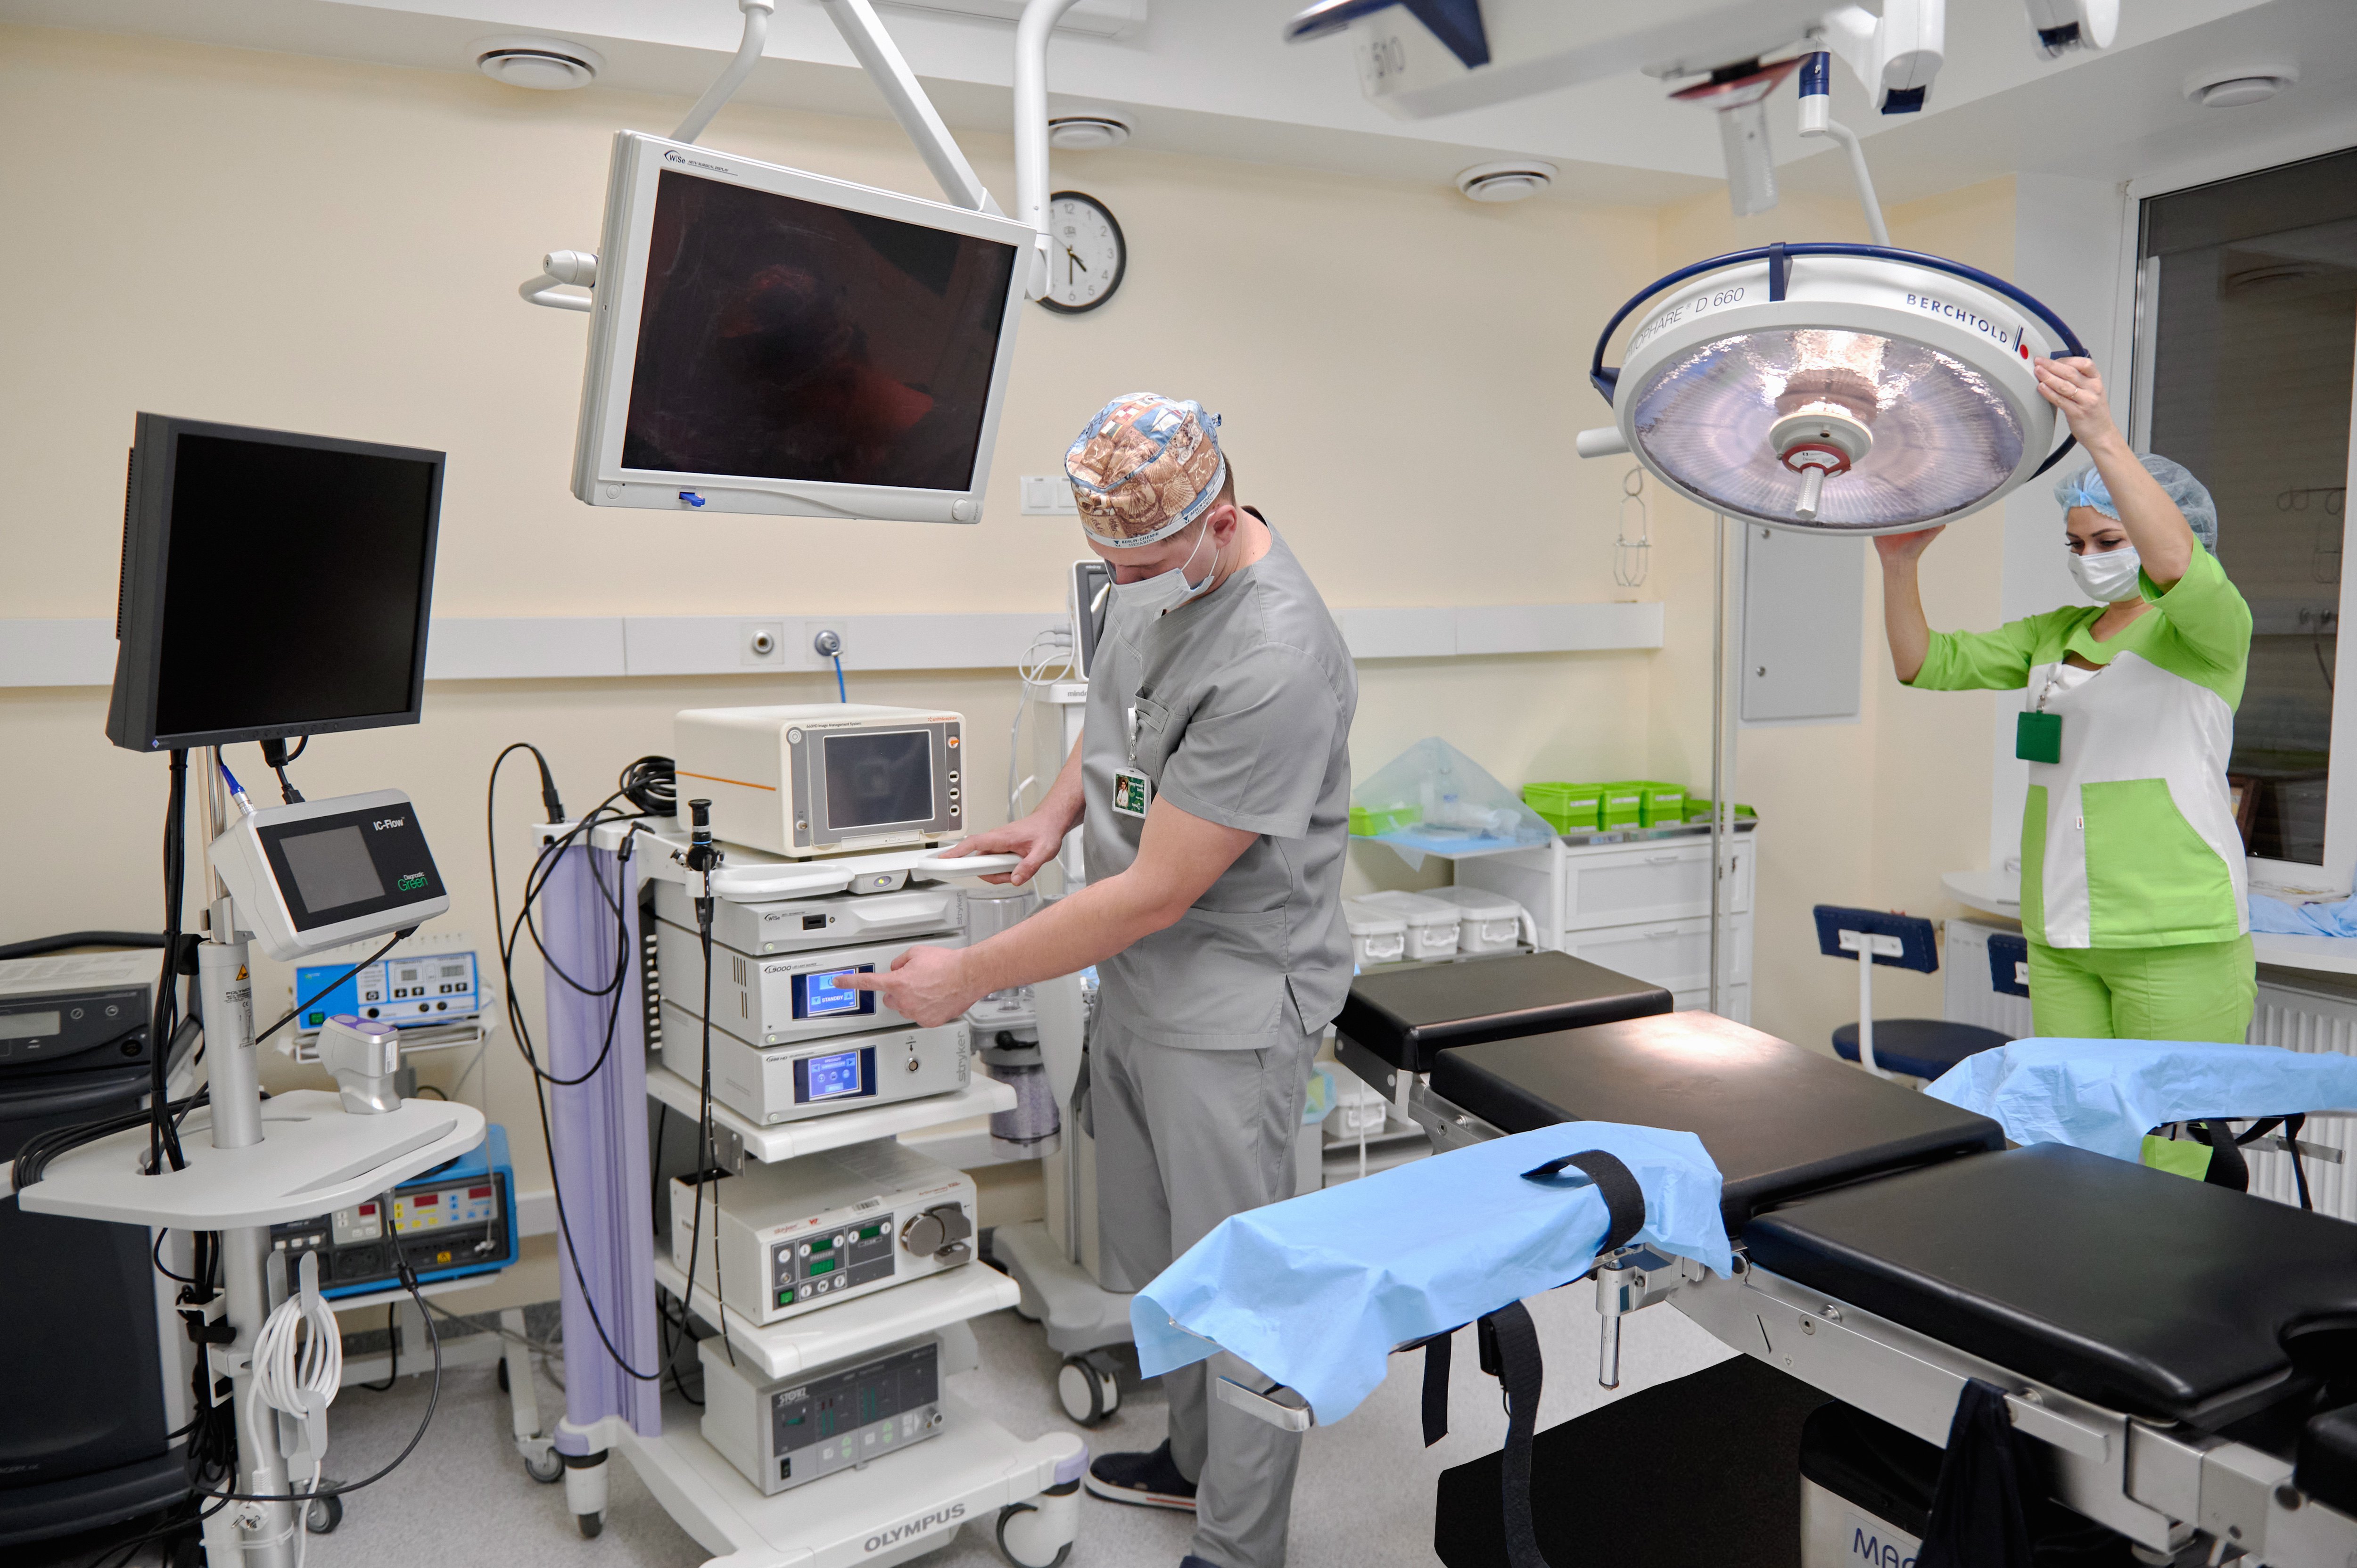 Хирурги выполняют сложнейшие операции, в том числе лапароскопические —без больших разрезов, через проколы